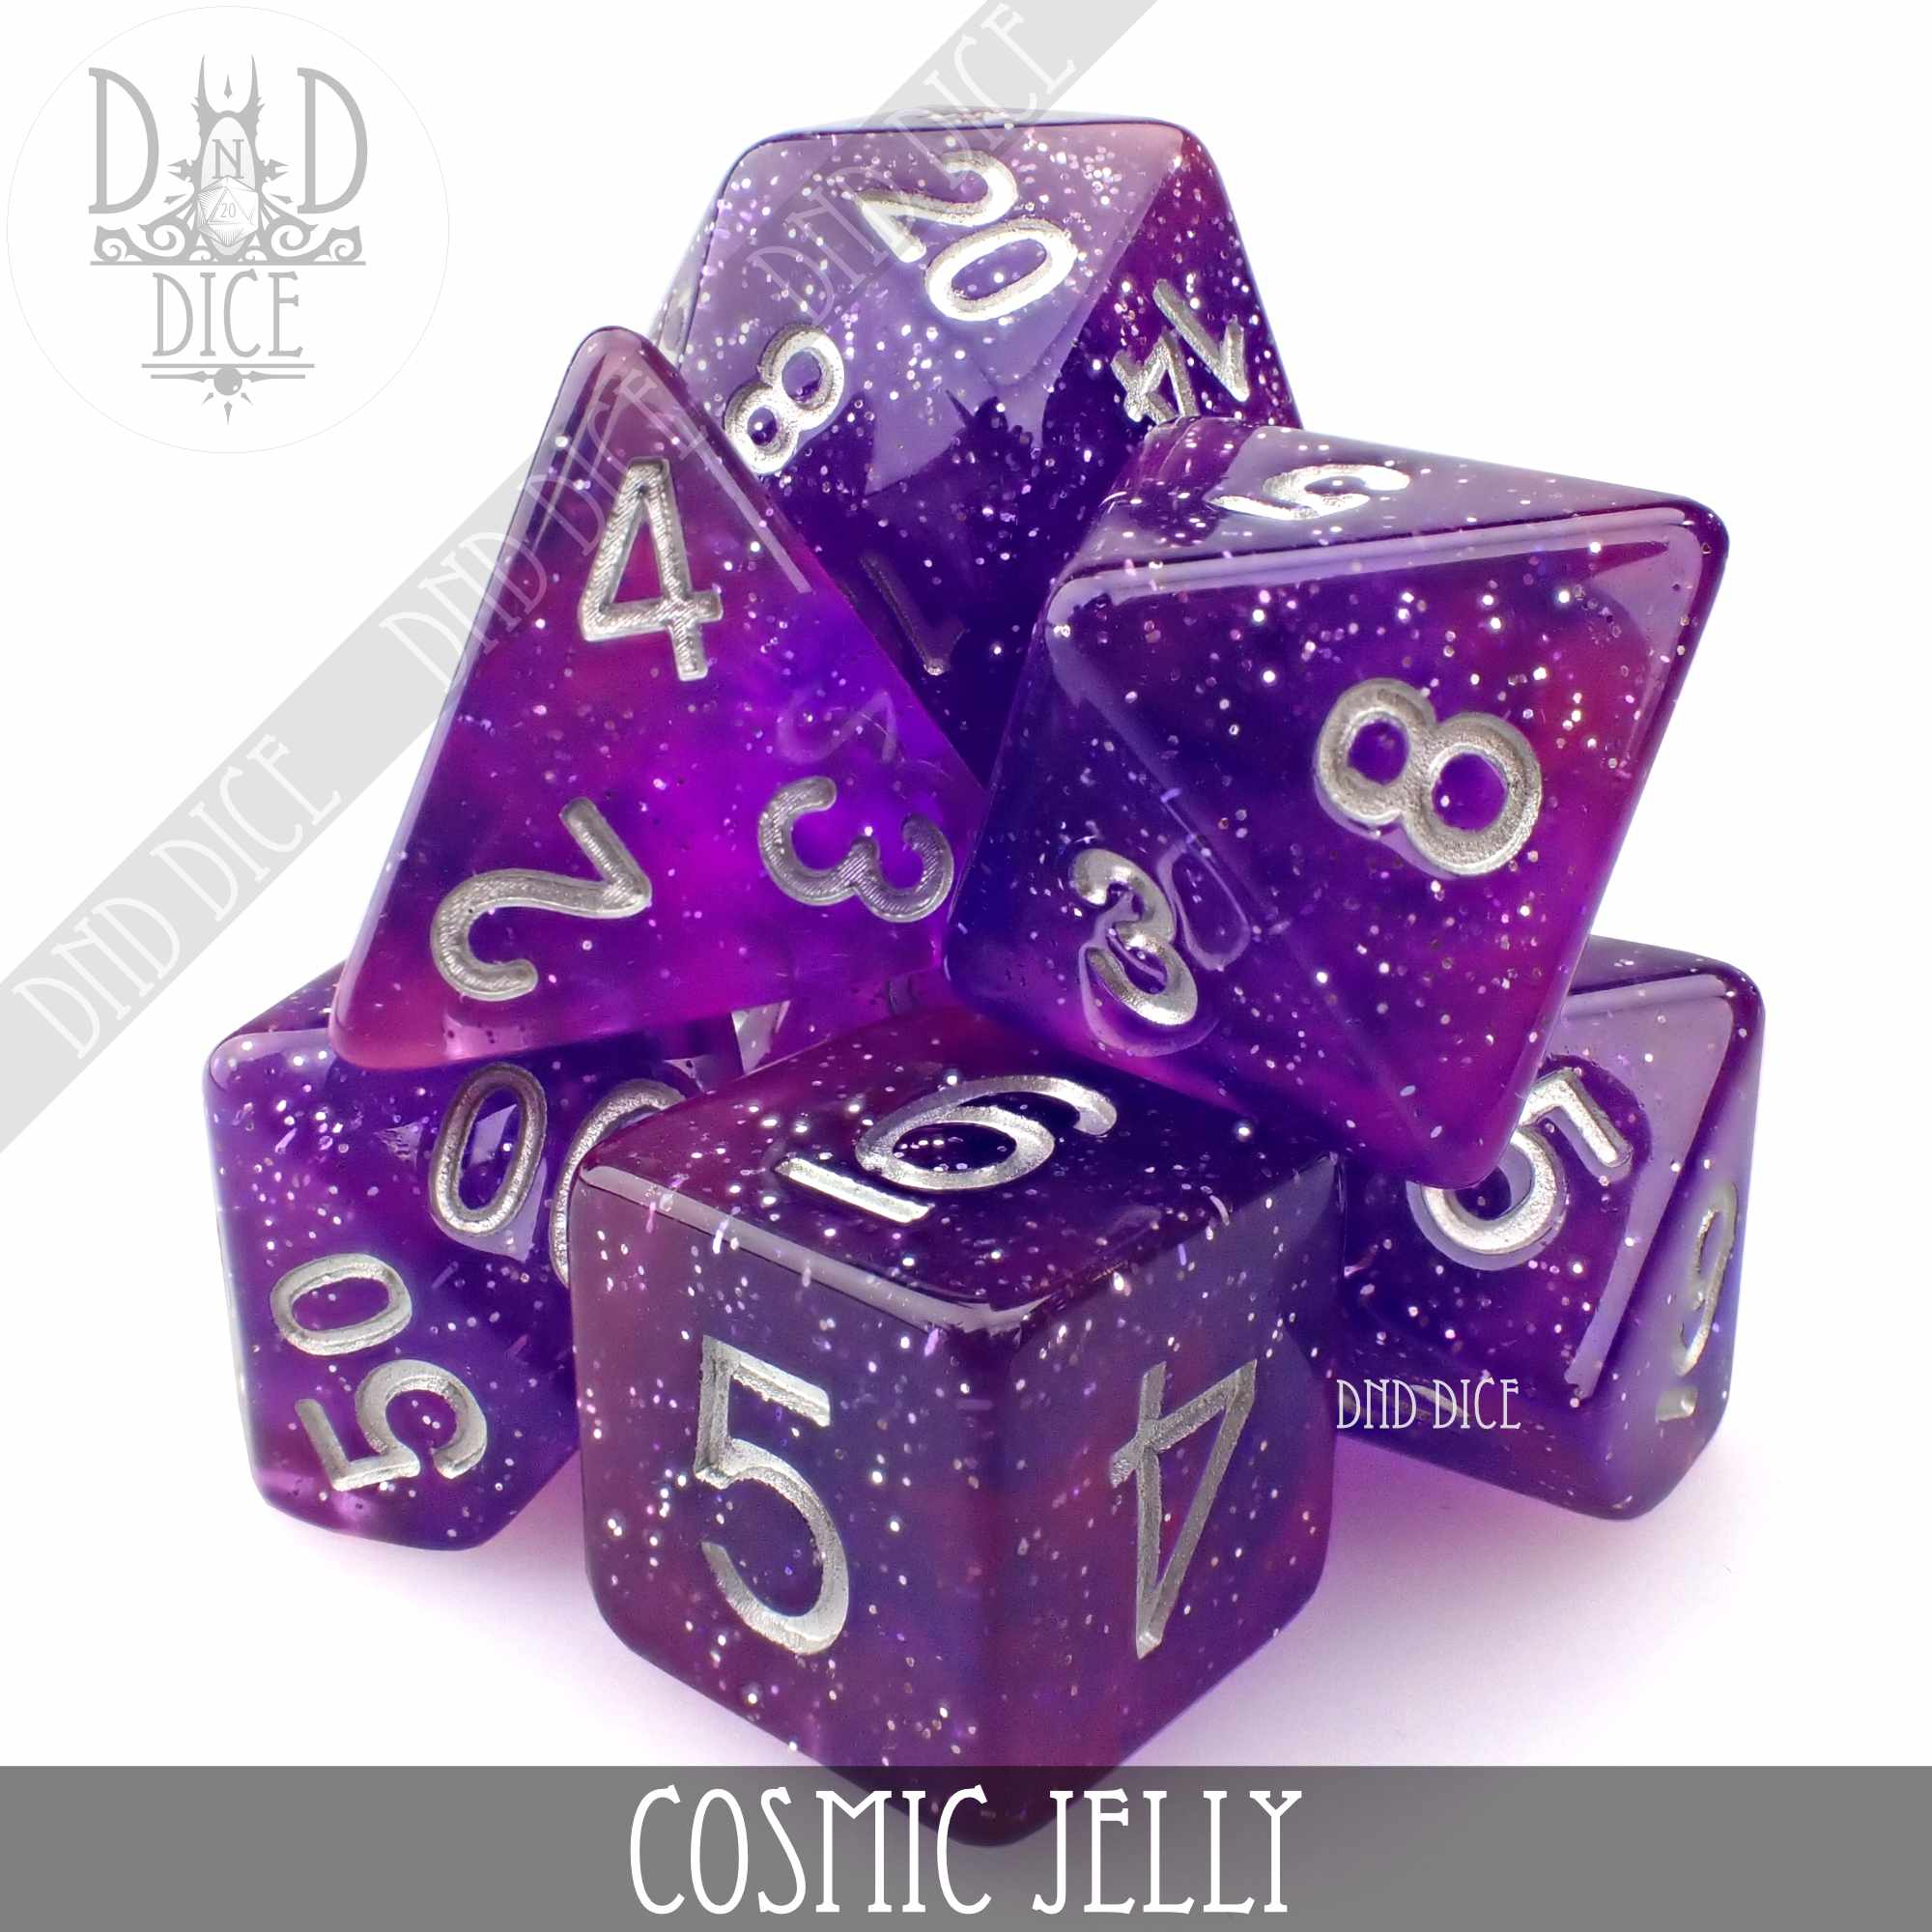 Cosmic Jelly Dice Set